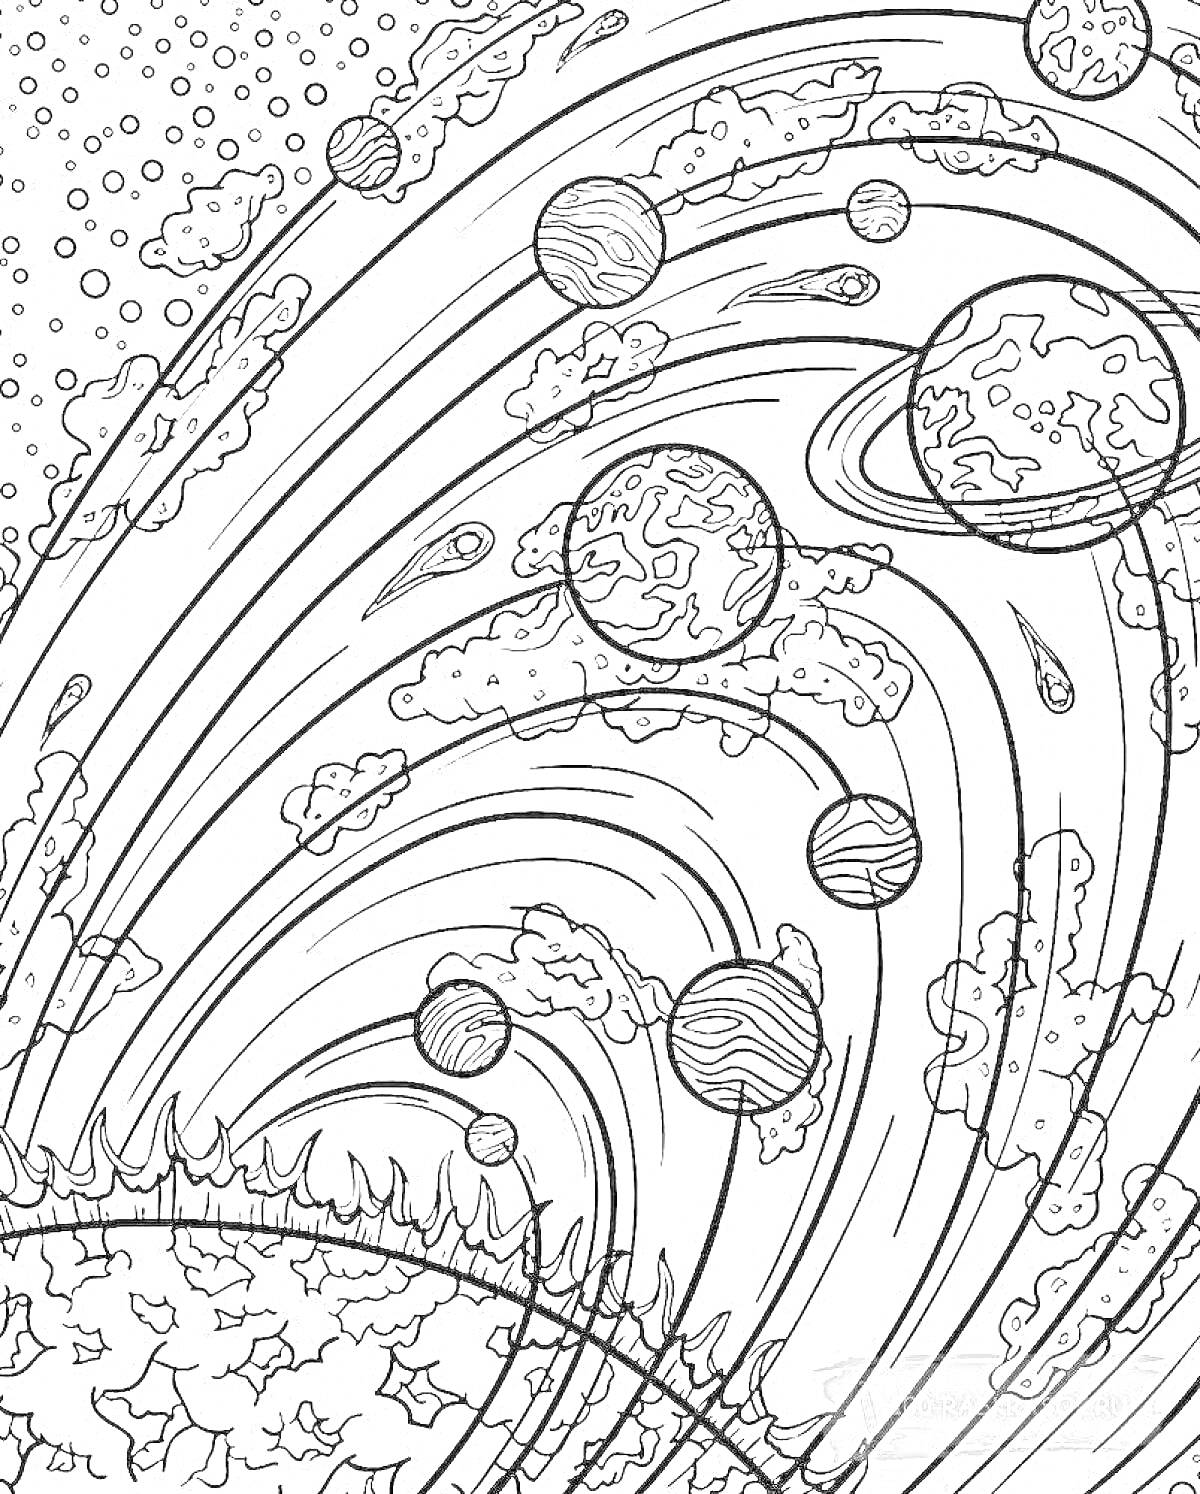 Космическая сцена с планетами, кольцами, астероидами, облаками и звёздами